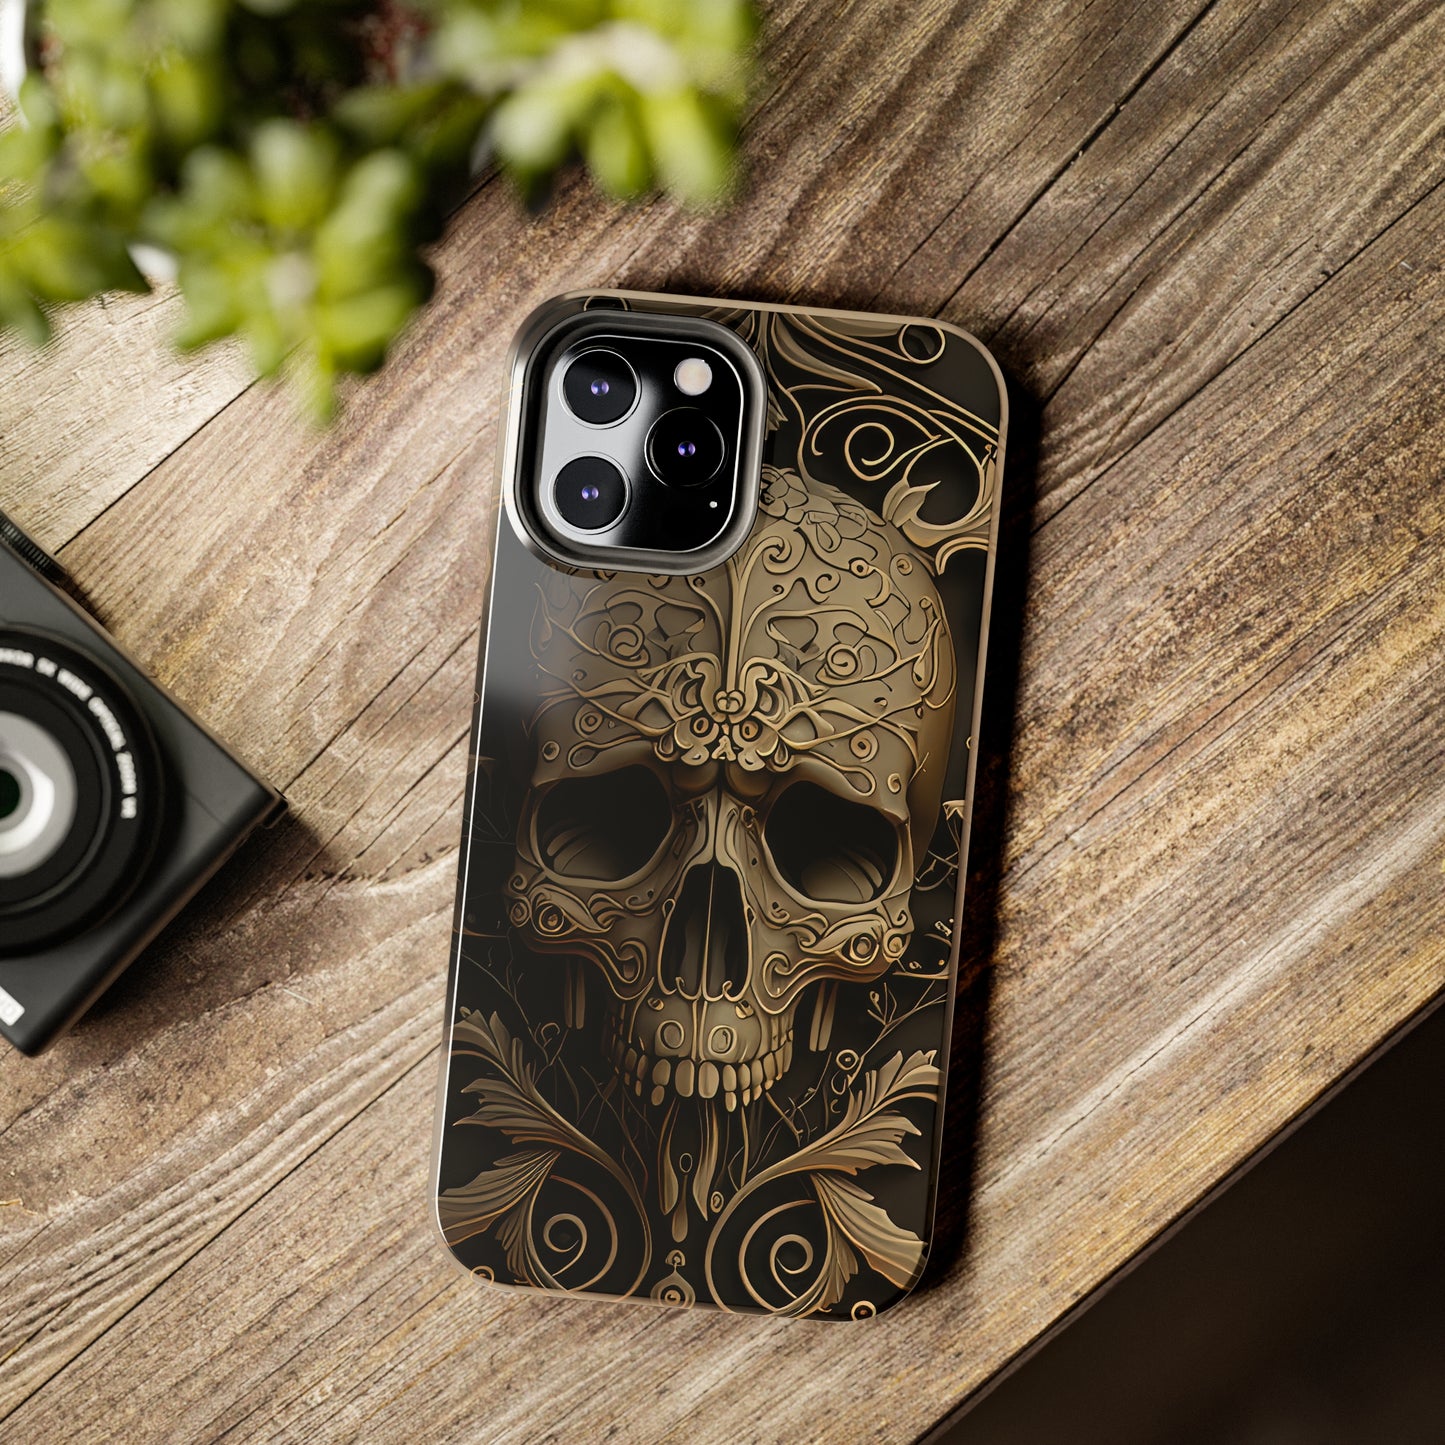 Metallic Chrome Skulls and classic Designed 5 Phone Cases